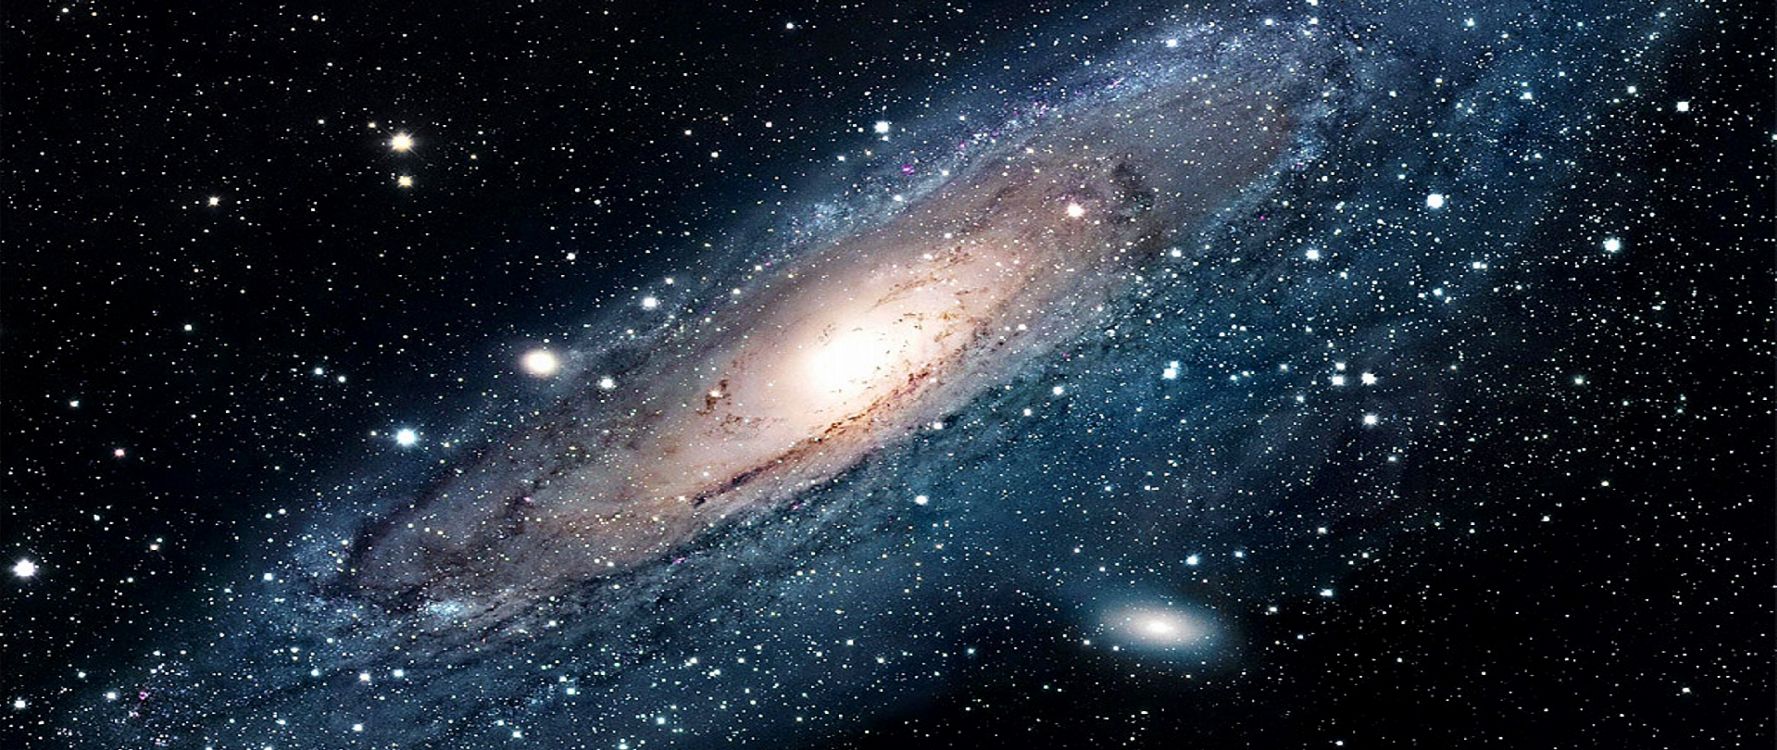 外层空间, 螺旋星系, 气氛, 宇宙, 天文学对象 壁纸 5120x2160 允许